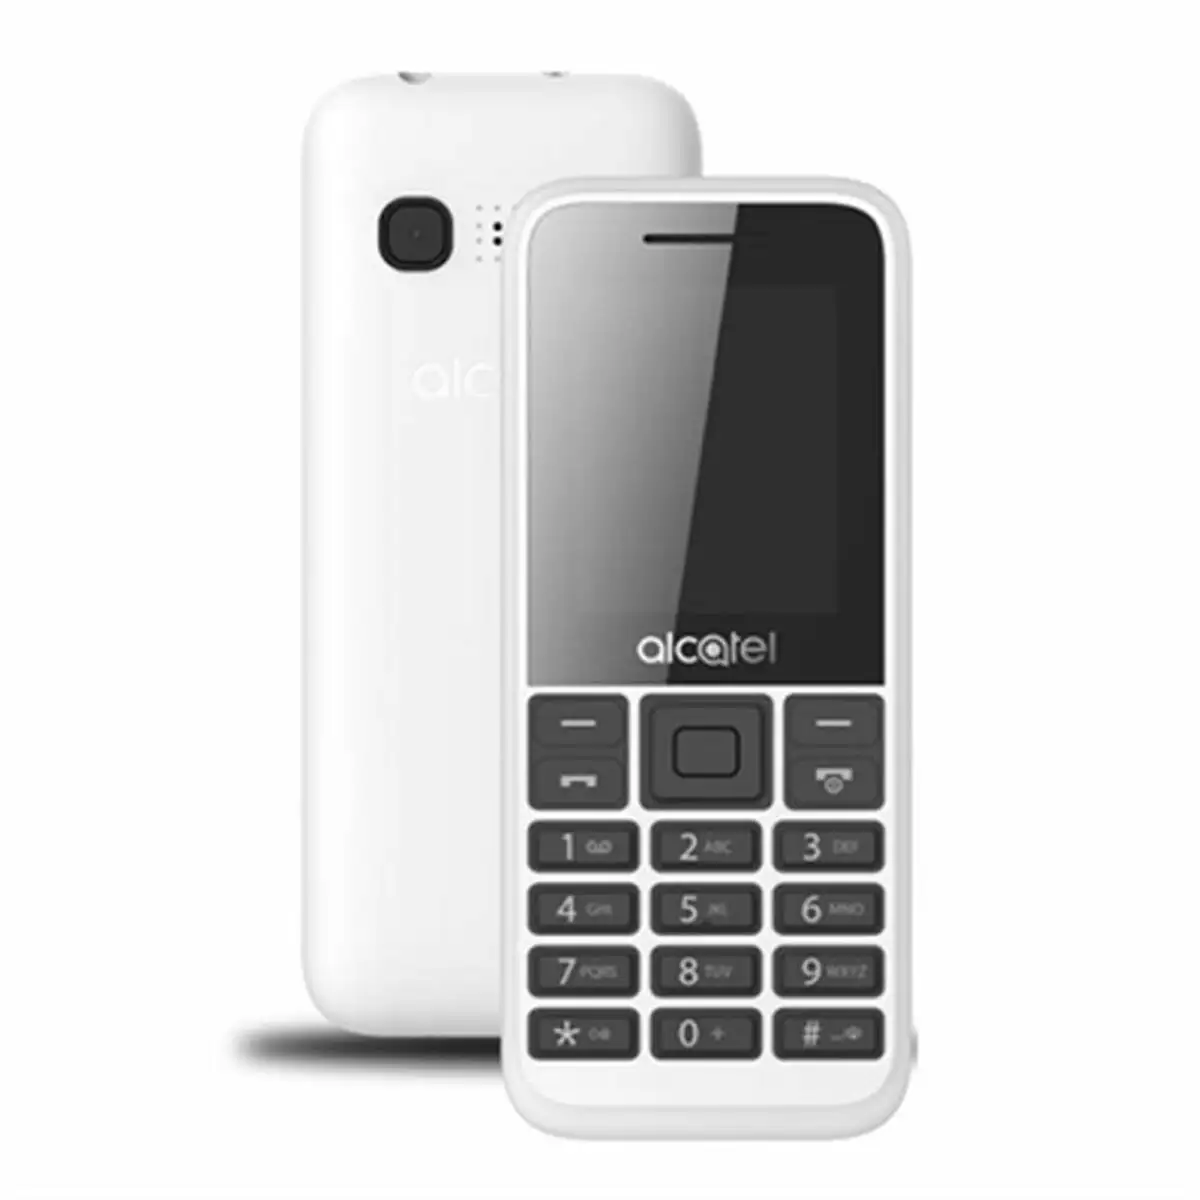 Telephone portable alcatel 1 8 blanc 8 gb ram 4 mb ram_6237. Bienvenue chez DIAYTAR SENEGAL - Où Chaque Détail Fait la Différence. Découvrez notre sélection méticuleuse et choisissez des articles qui répondent à vos exigences.